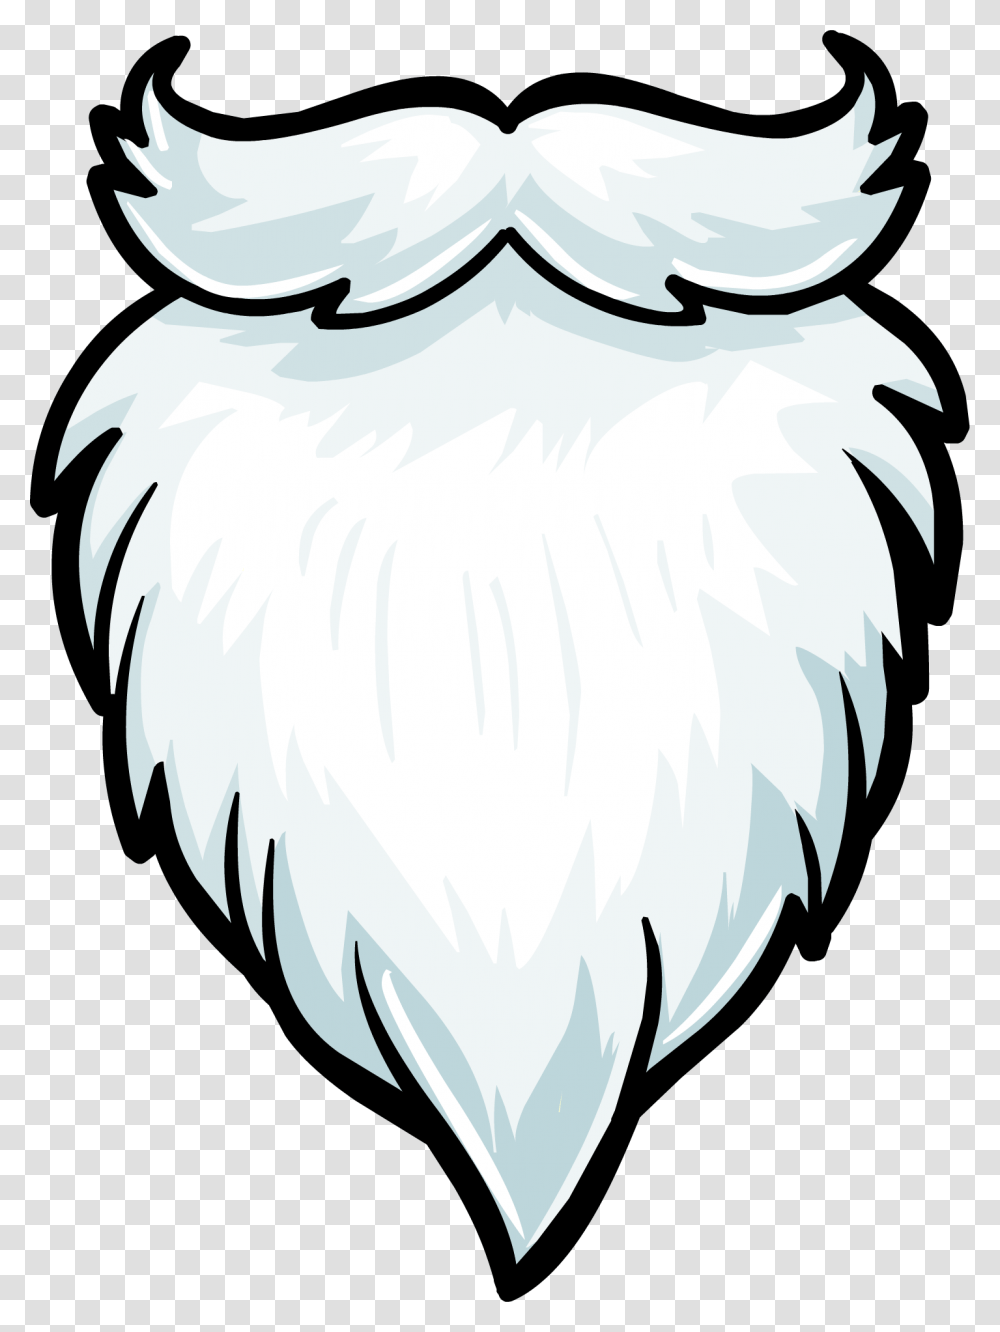 Beard Clipart Plain Santa Claus Beard, Animal, Face, Bird, Mammal Transparent Png